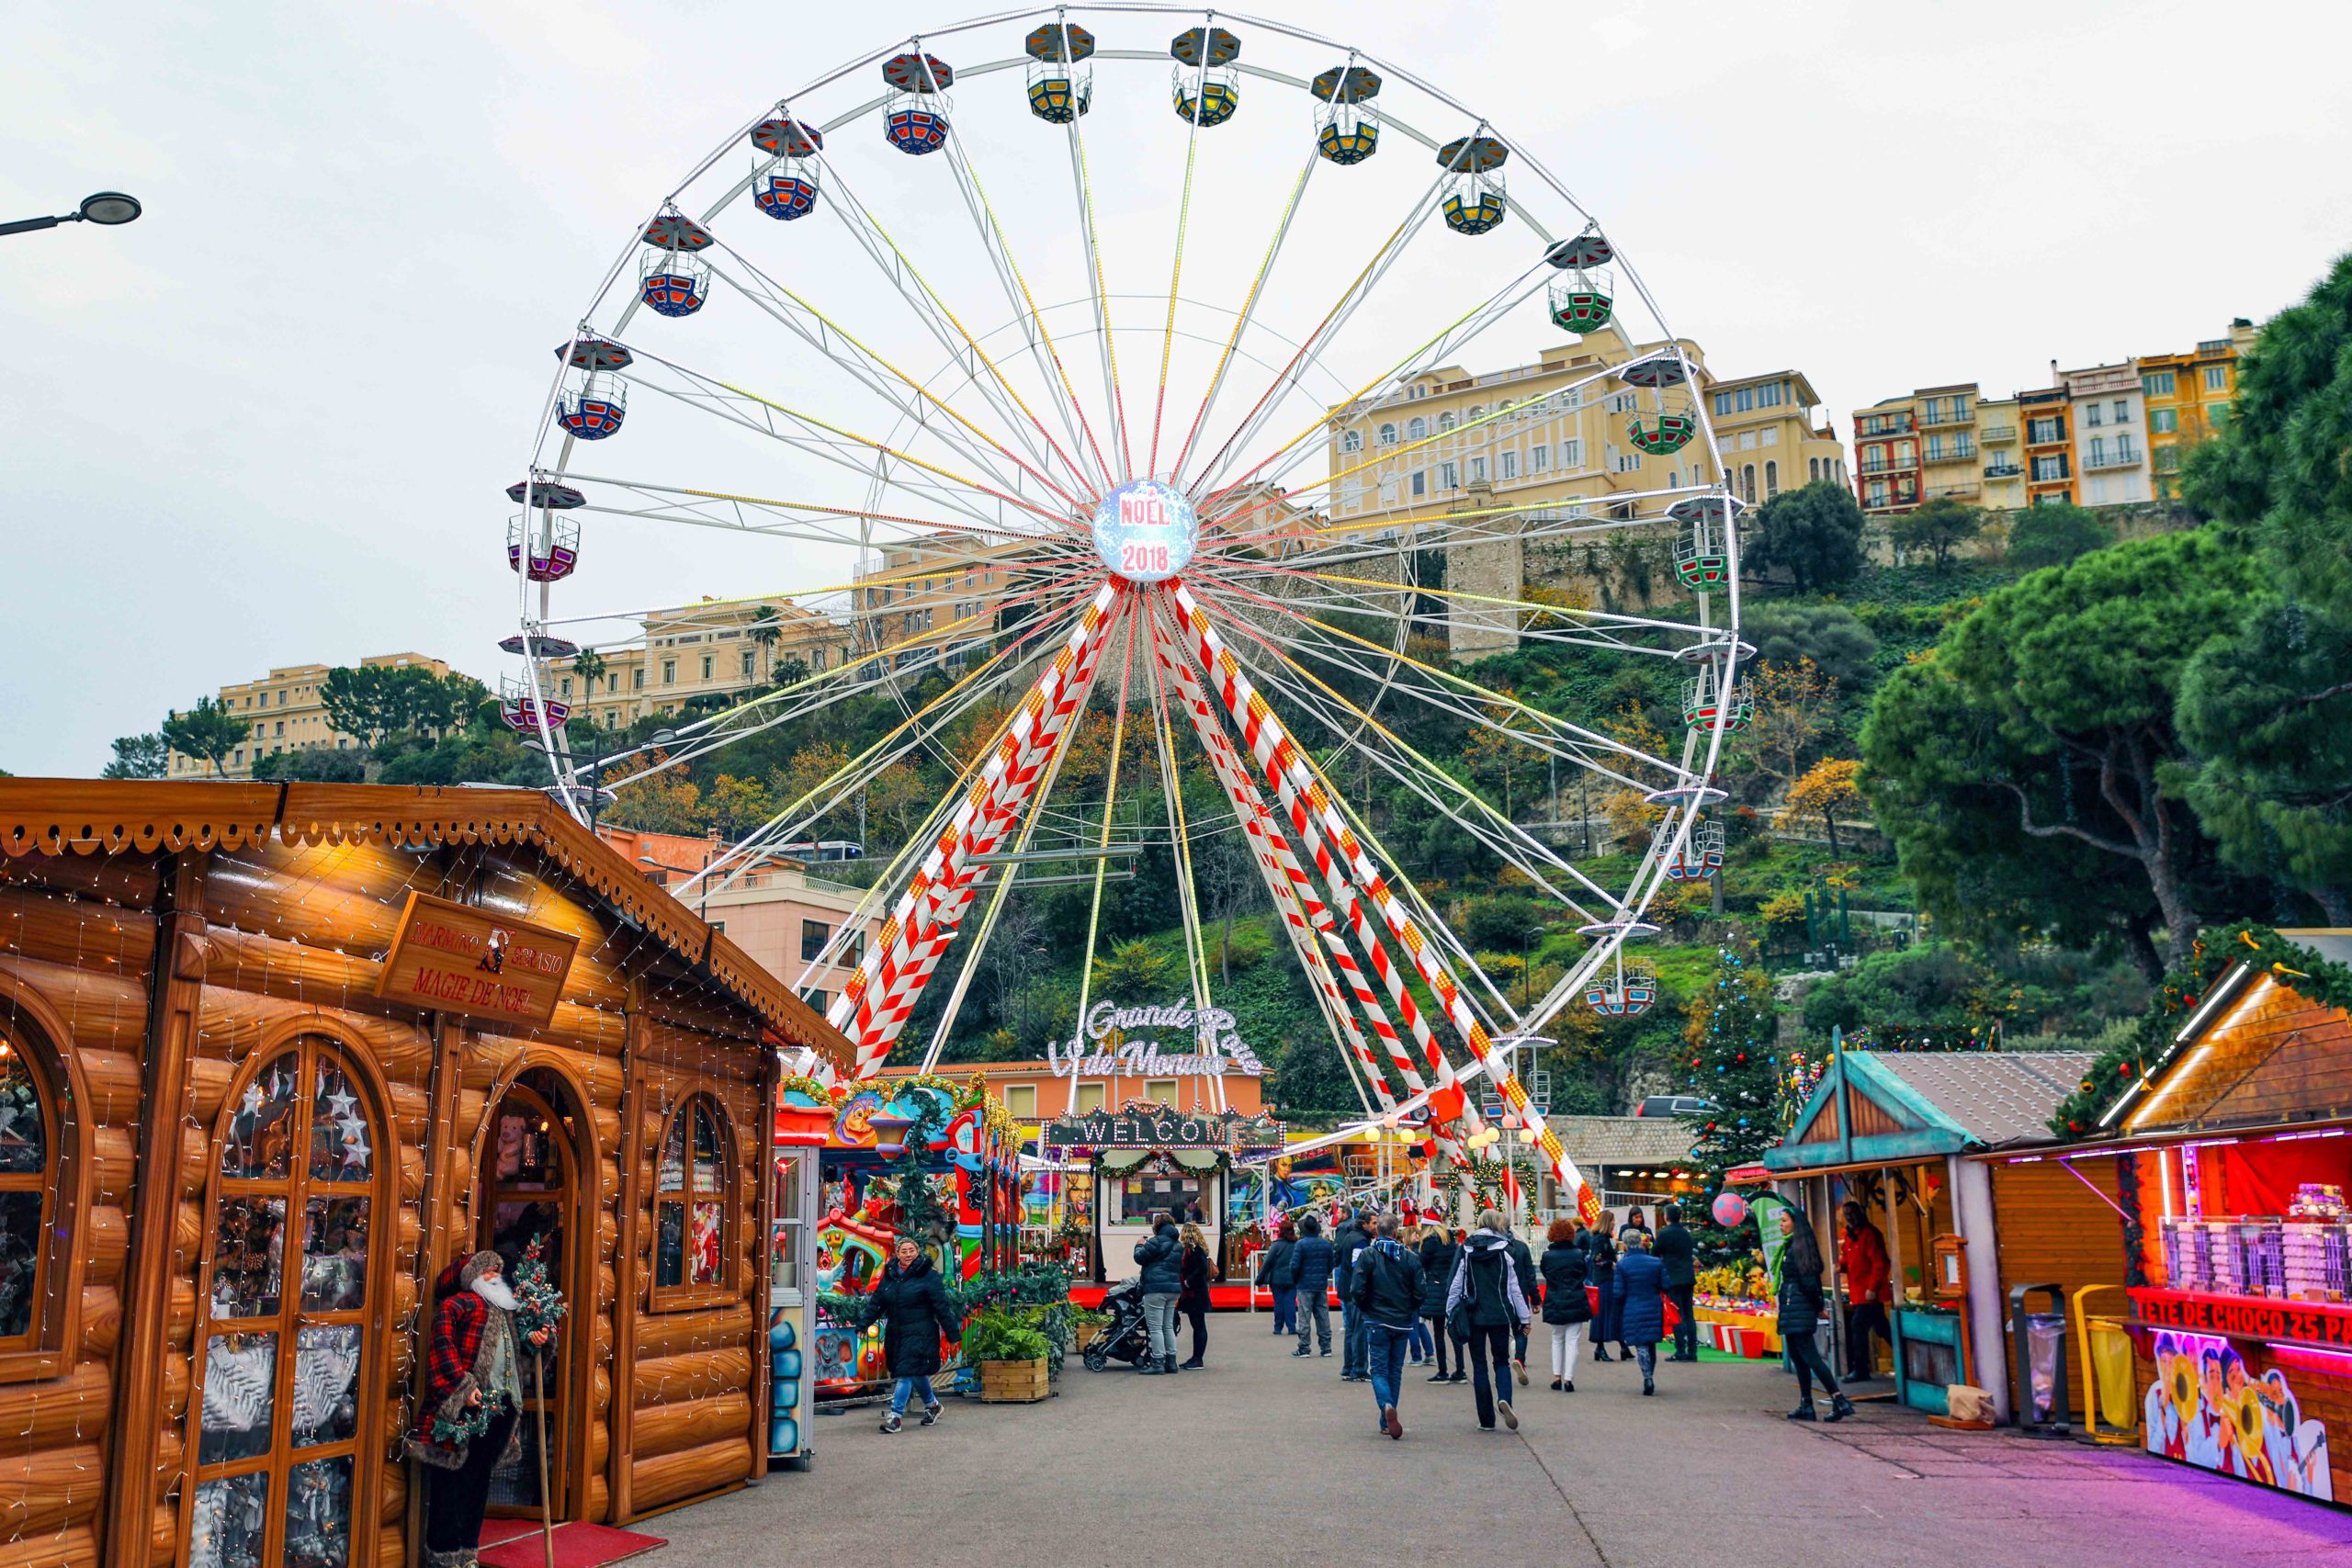 La grande roue du Marché de Noël de Monaco. Photo : @sibuet via Twenty20